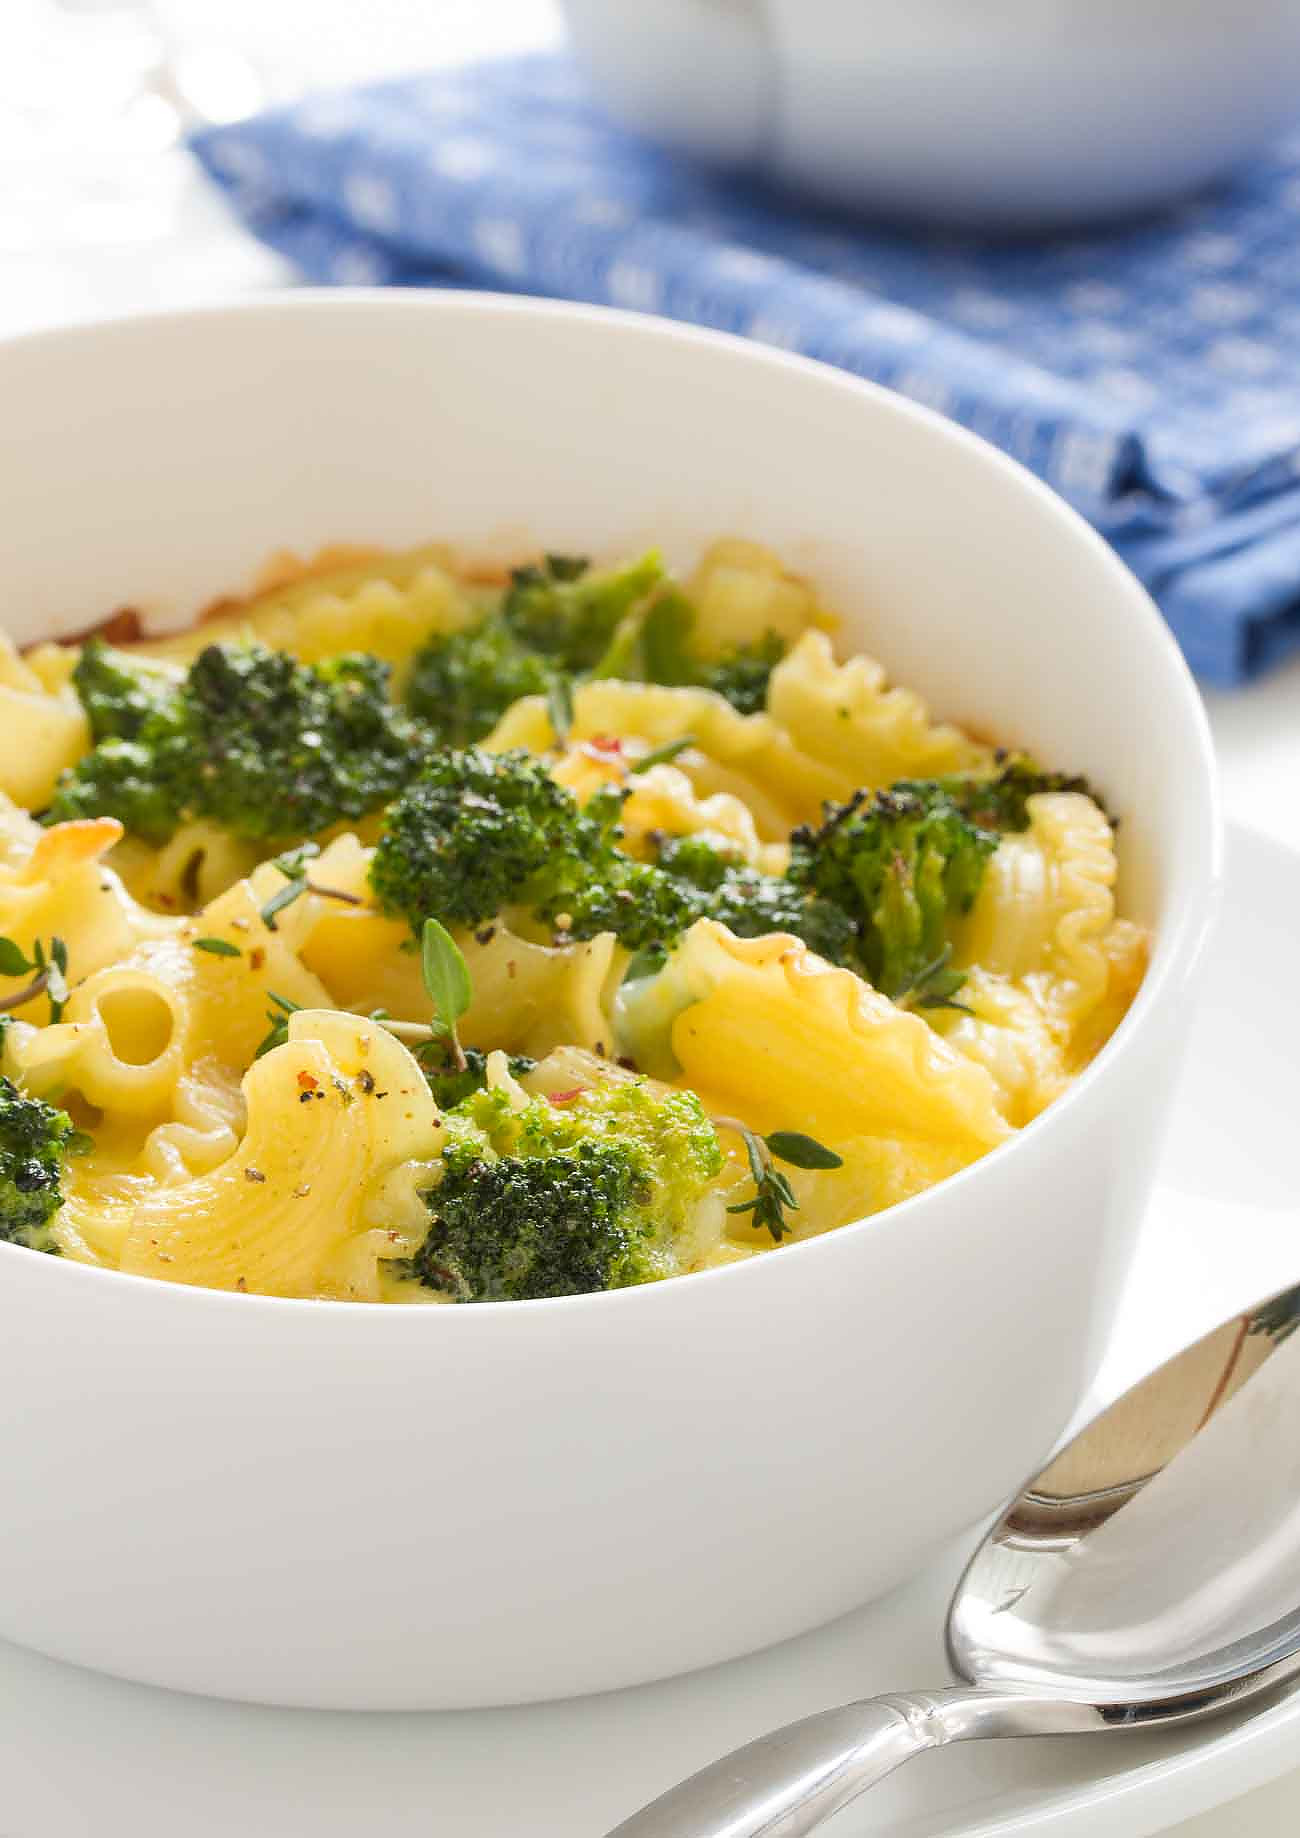 Cheesy Pasta Casserole With Broccoli And Cheese Recipe